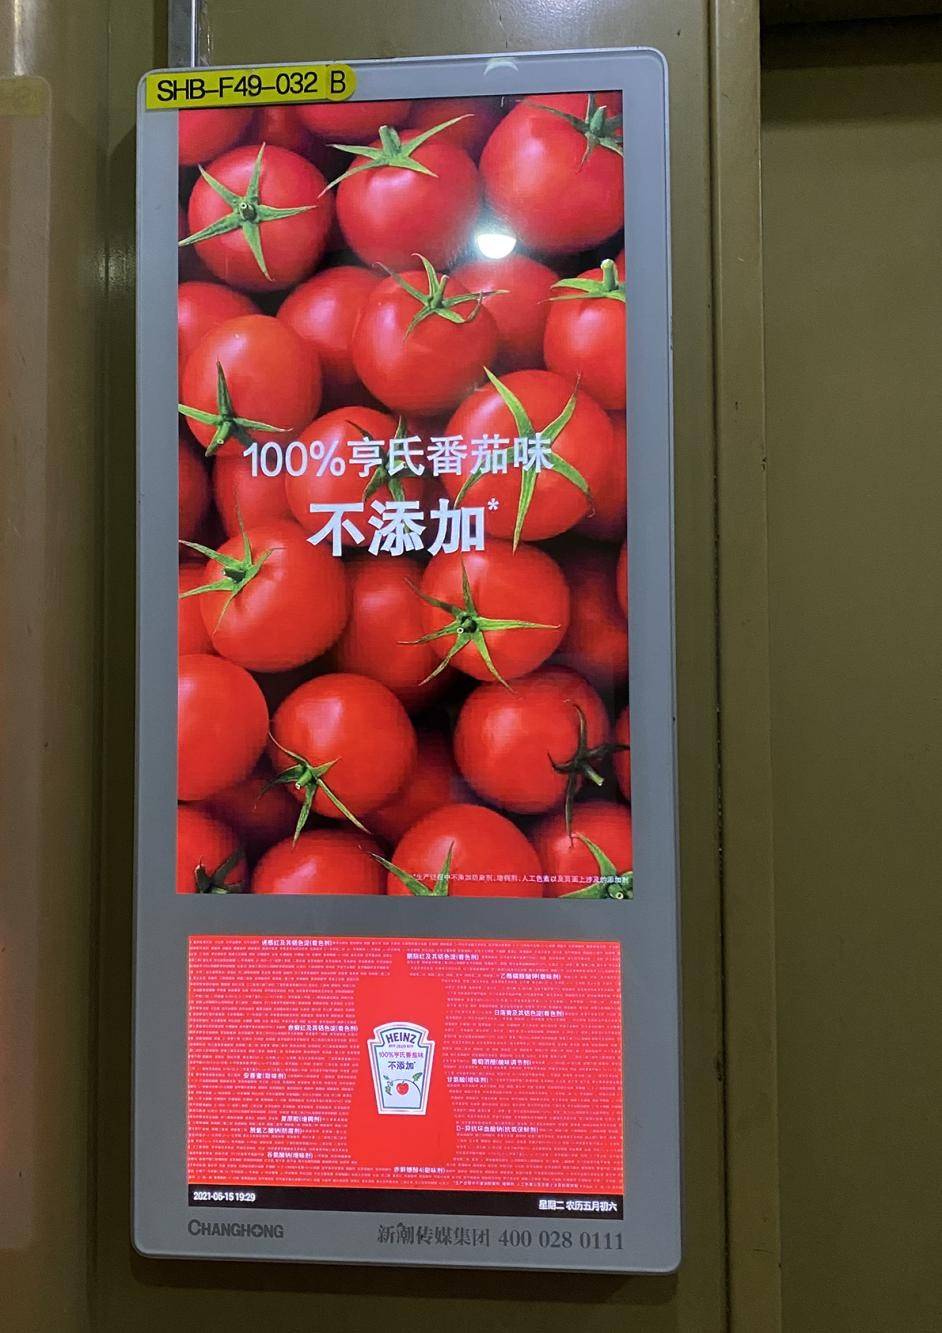 亨氏番茄酱广告语图片